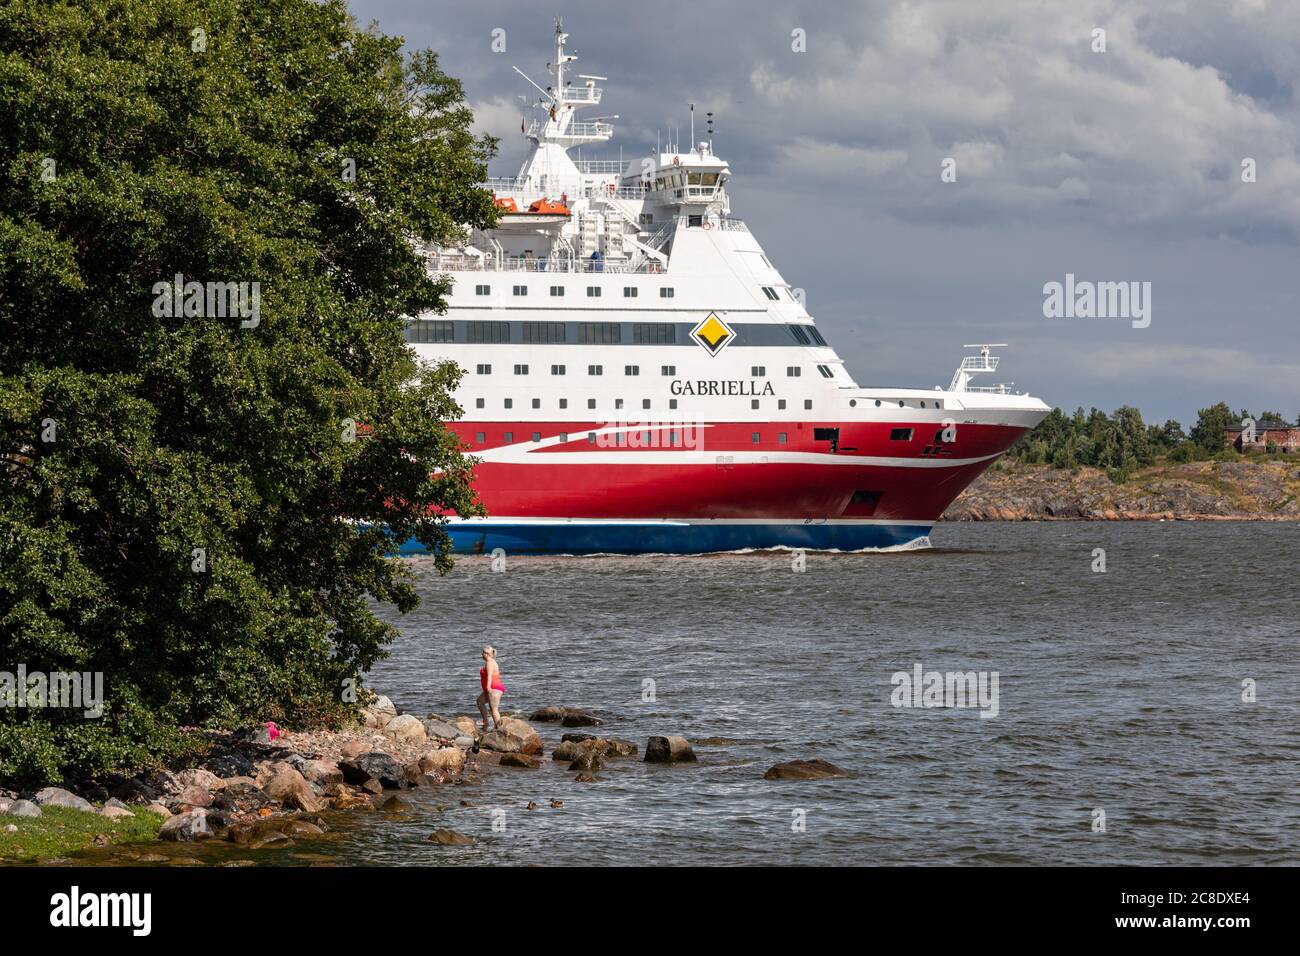 Frau in rosa Badeanzug kommt aus dem Wasser, während Kreuzfahrtschiff M/S Gabriella Lonna Insel in Helsinki Archipel, Finnland passiert Stockfoto